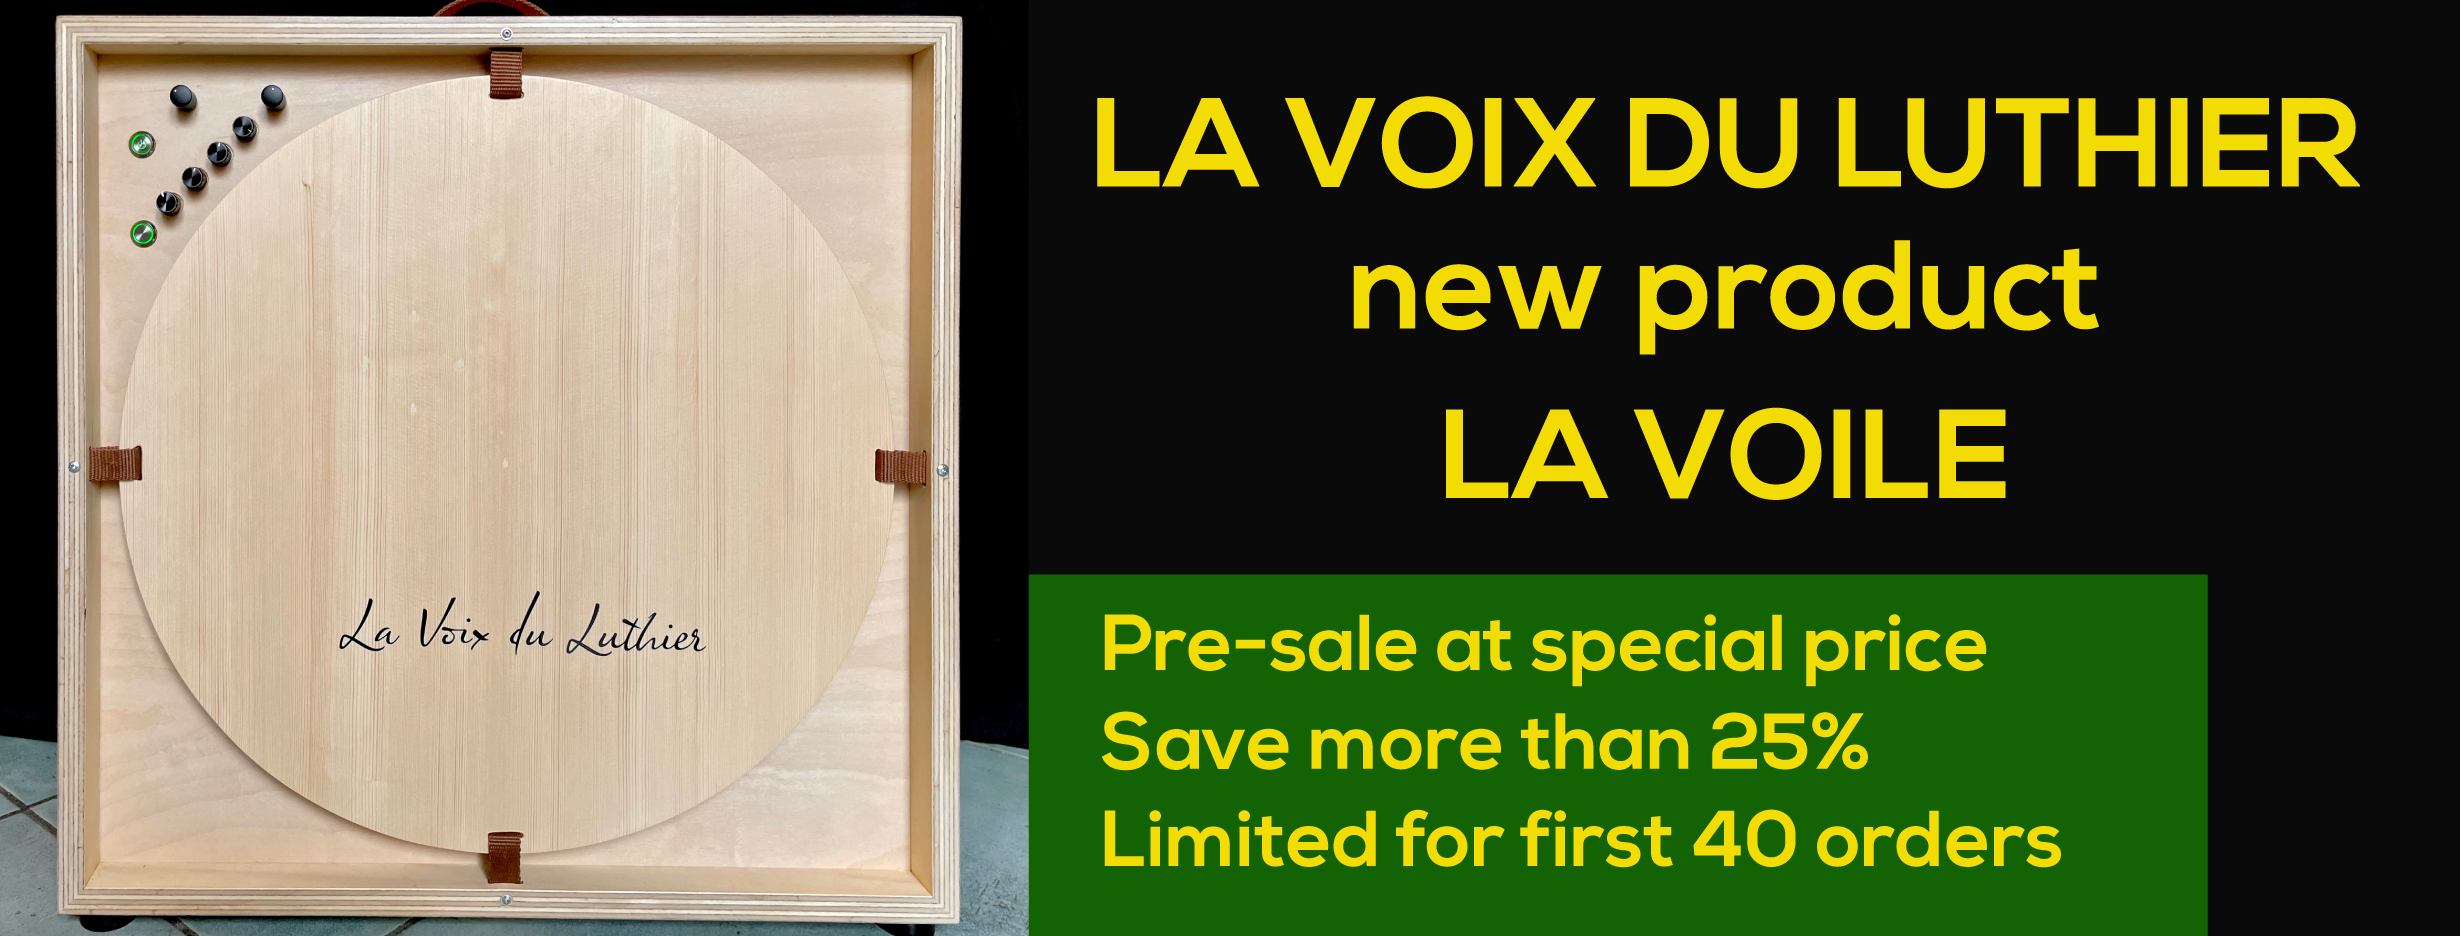 www.la-voix-du-luthier.com